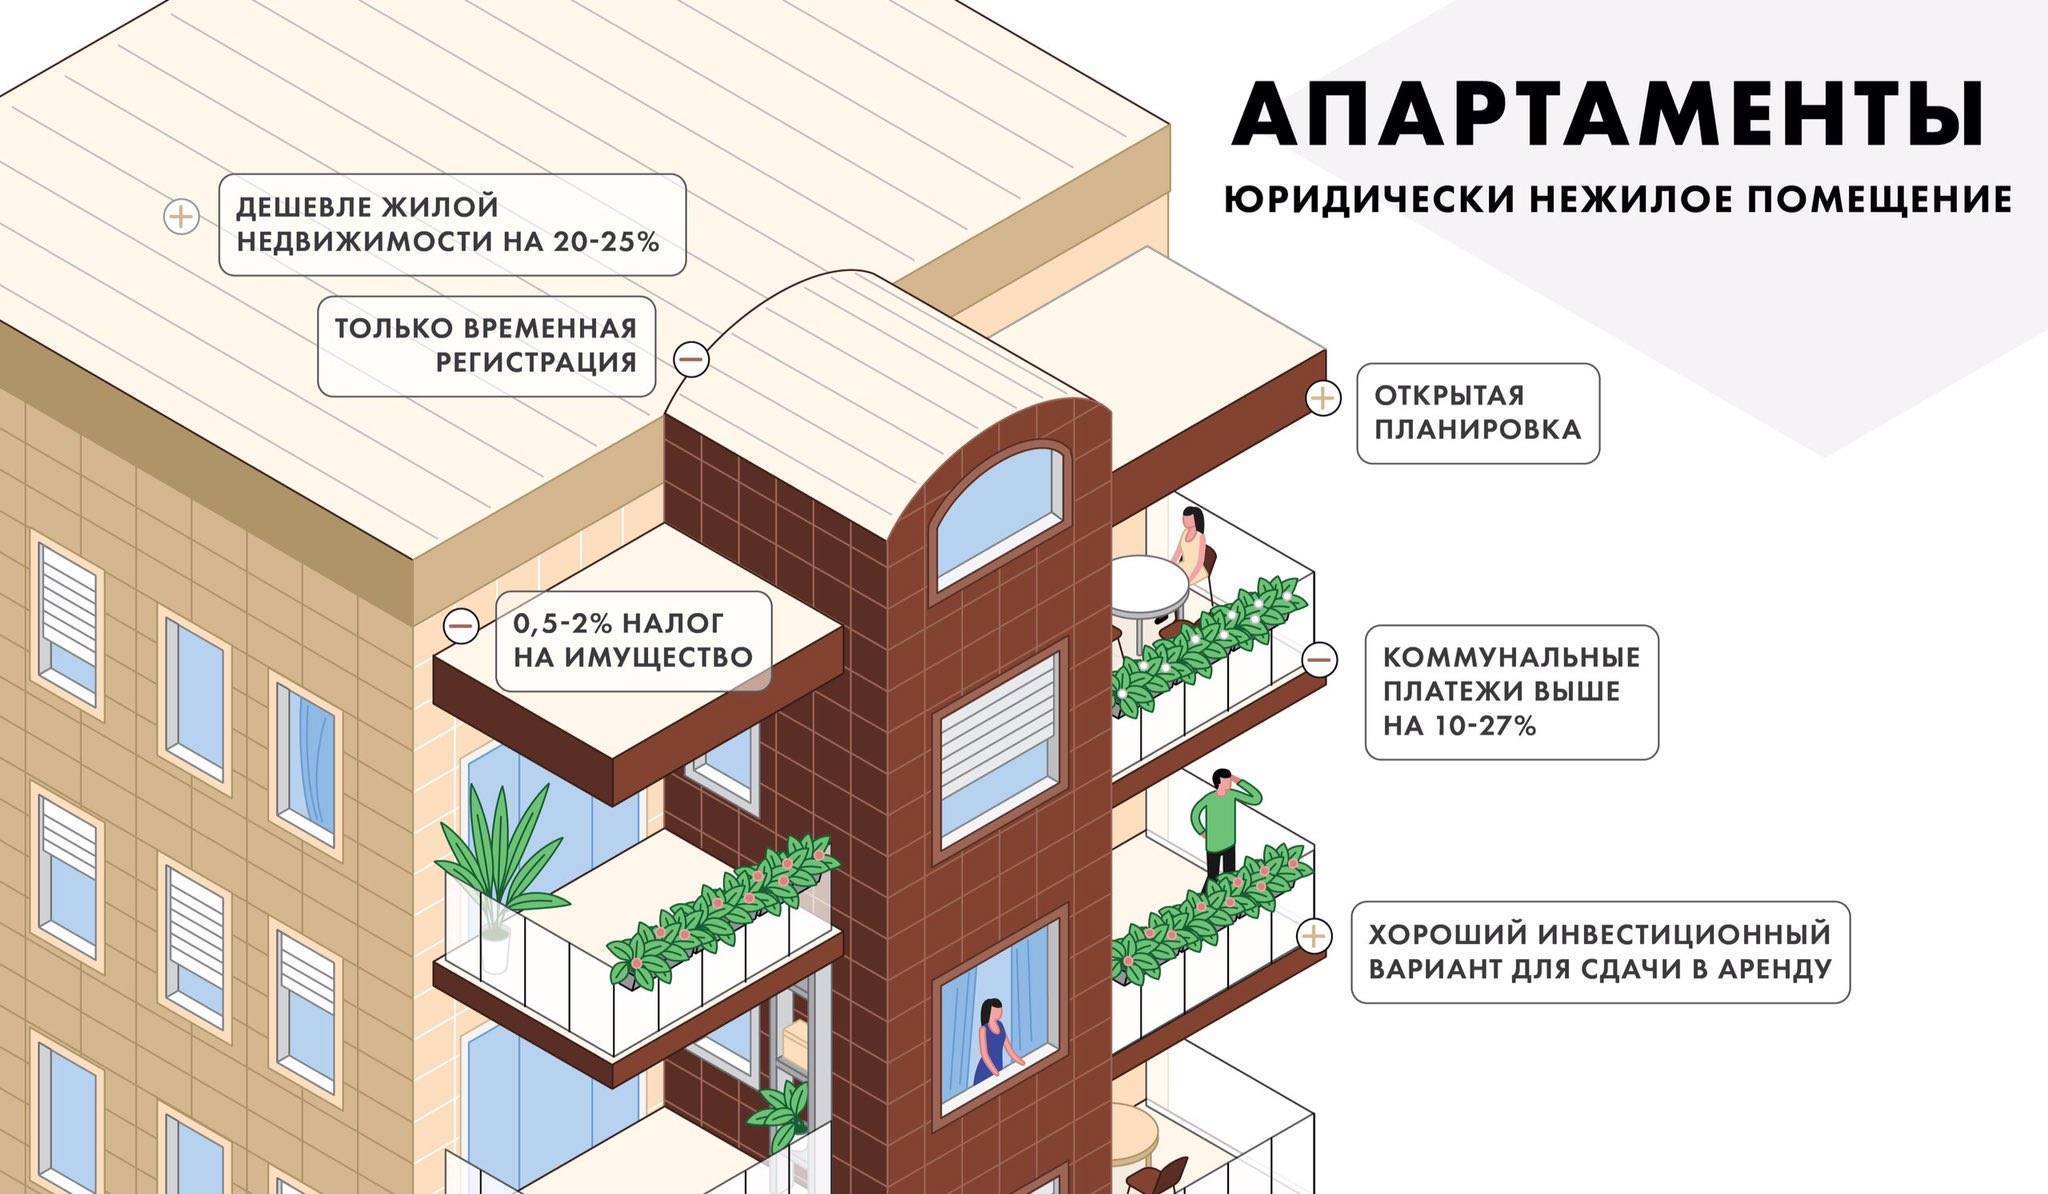 Апартаменты и квартира: в чем разница между этими жилыми помещениями по законодательству | domosite.ru